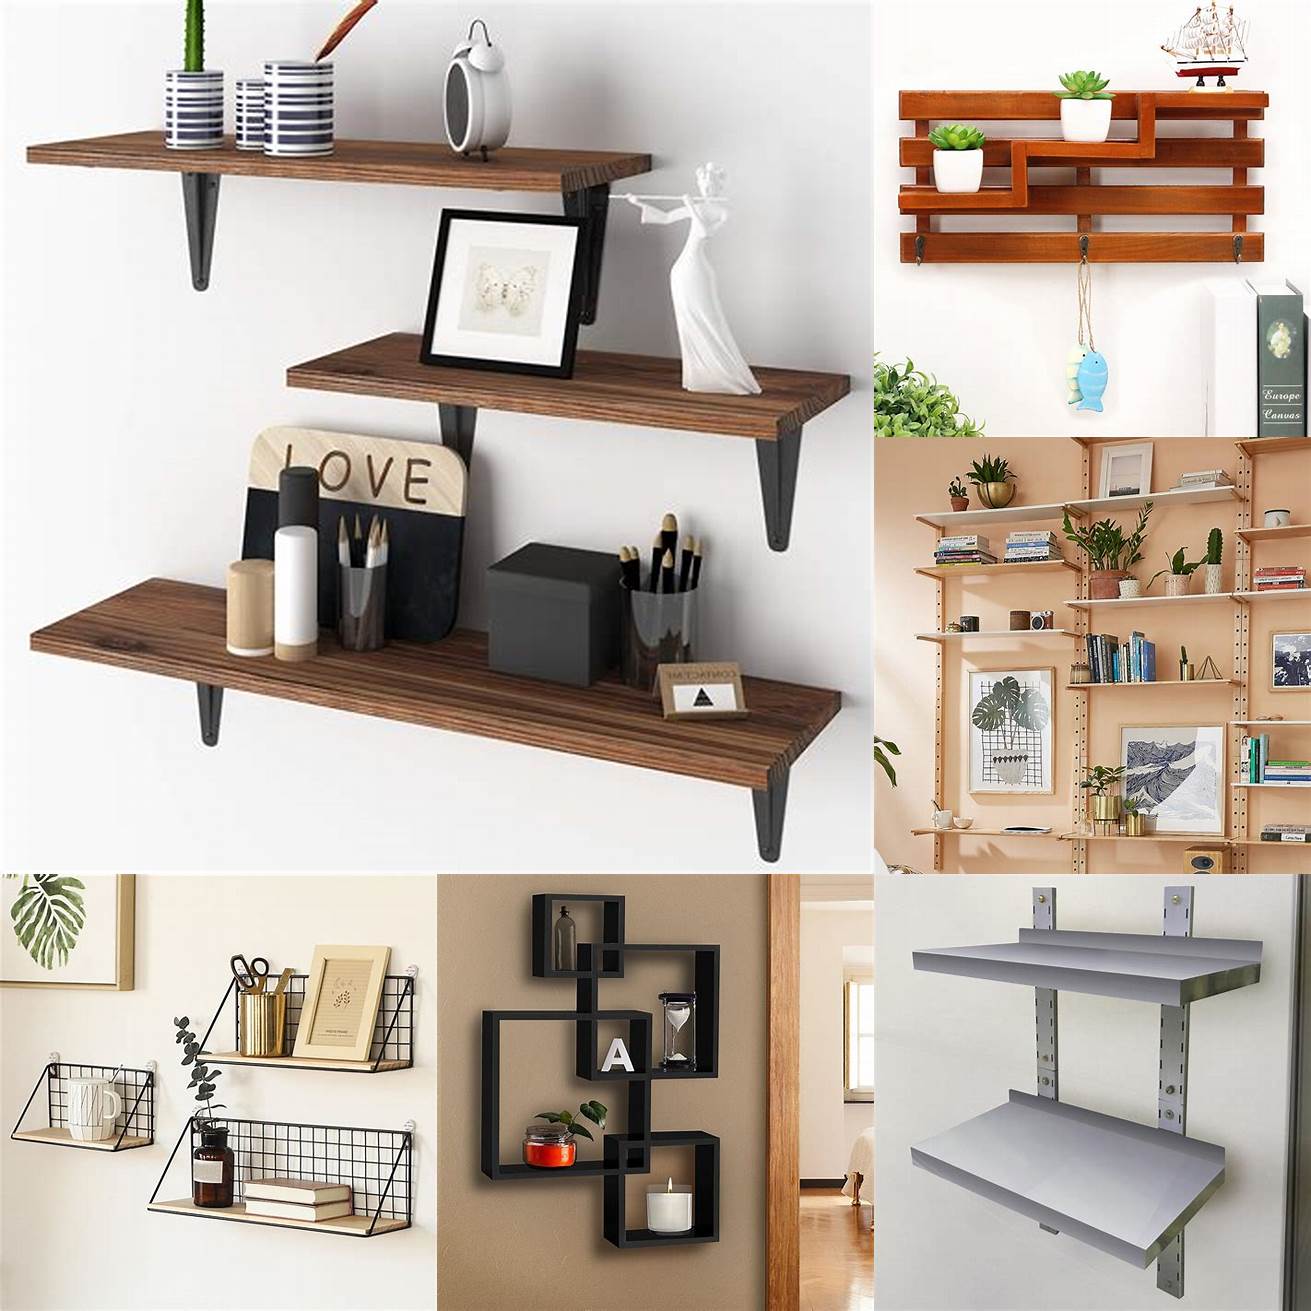 Wall-mounted shelves